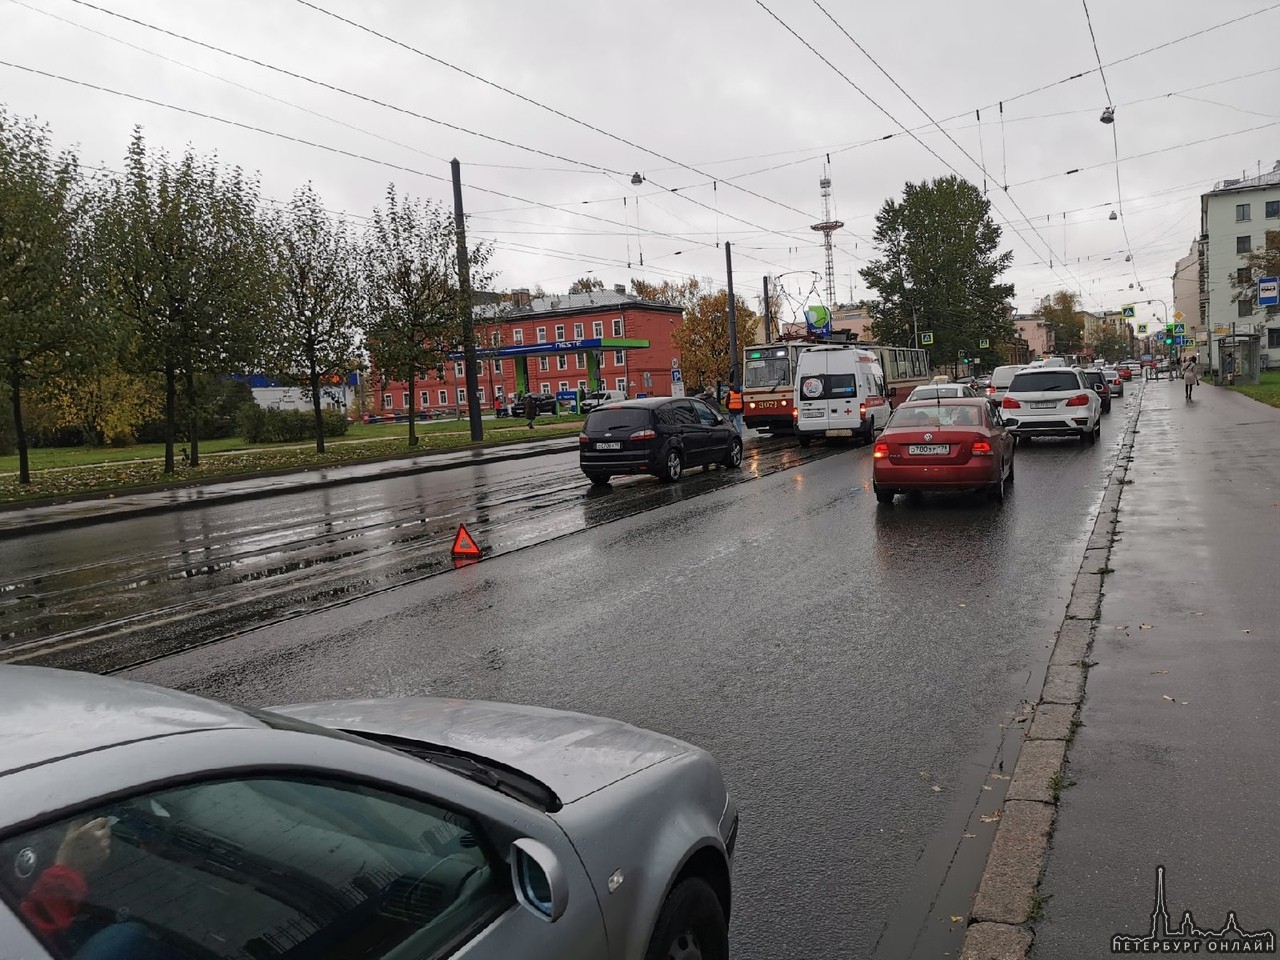 Кого-то сбили на путях в районе Нейшлотского переулка, трамваи встали, скорые на месте